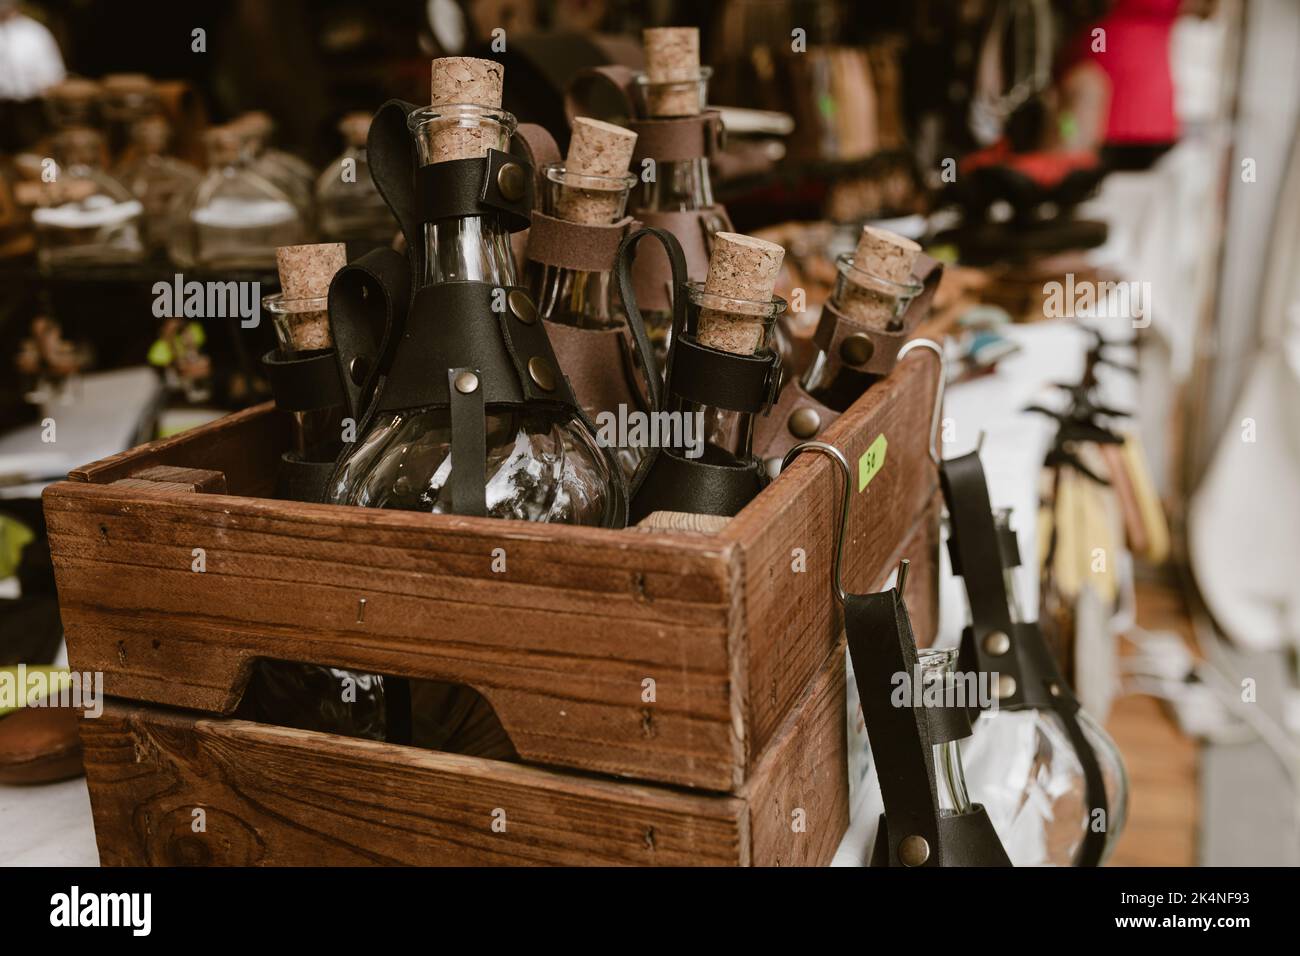 Holzkiste mit Trank-Flaschen mit (Lederhaltern) auf einem Marktstand, Flaschen für Cosplay-Kostüme. Stockfoto